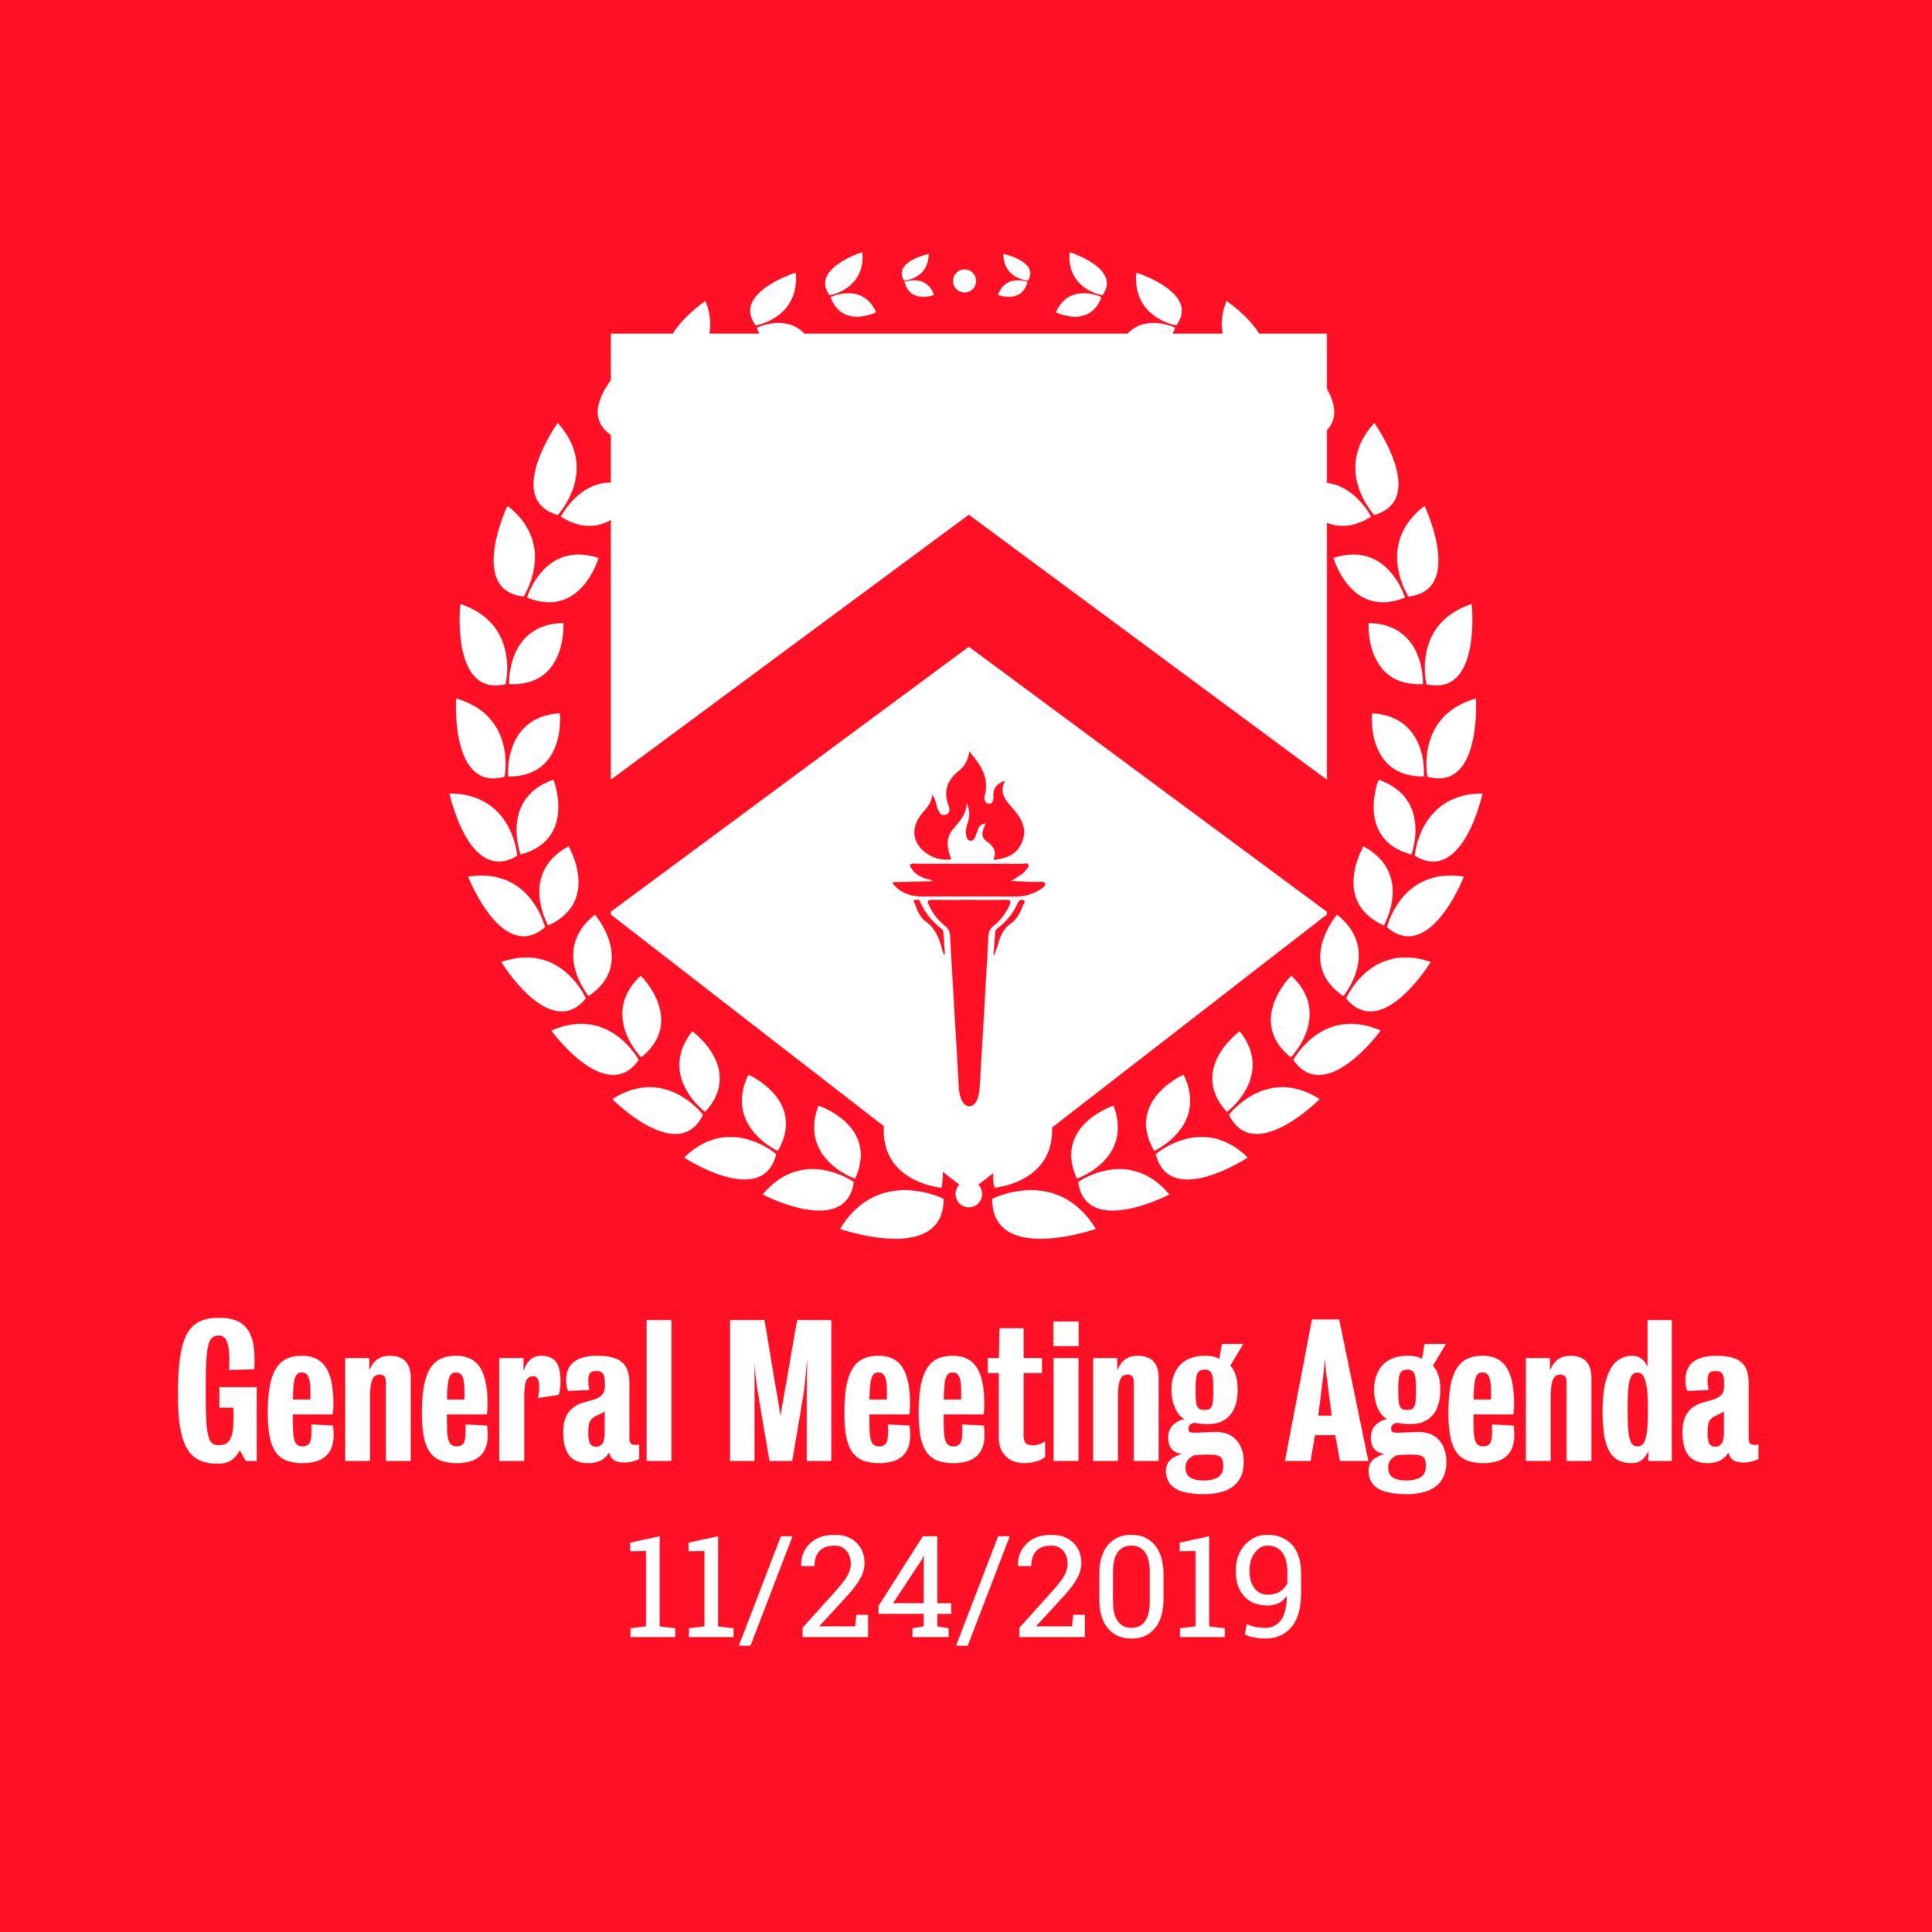 General Meeting Agenda 11/24/2019